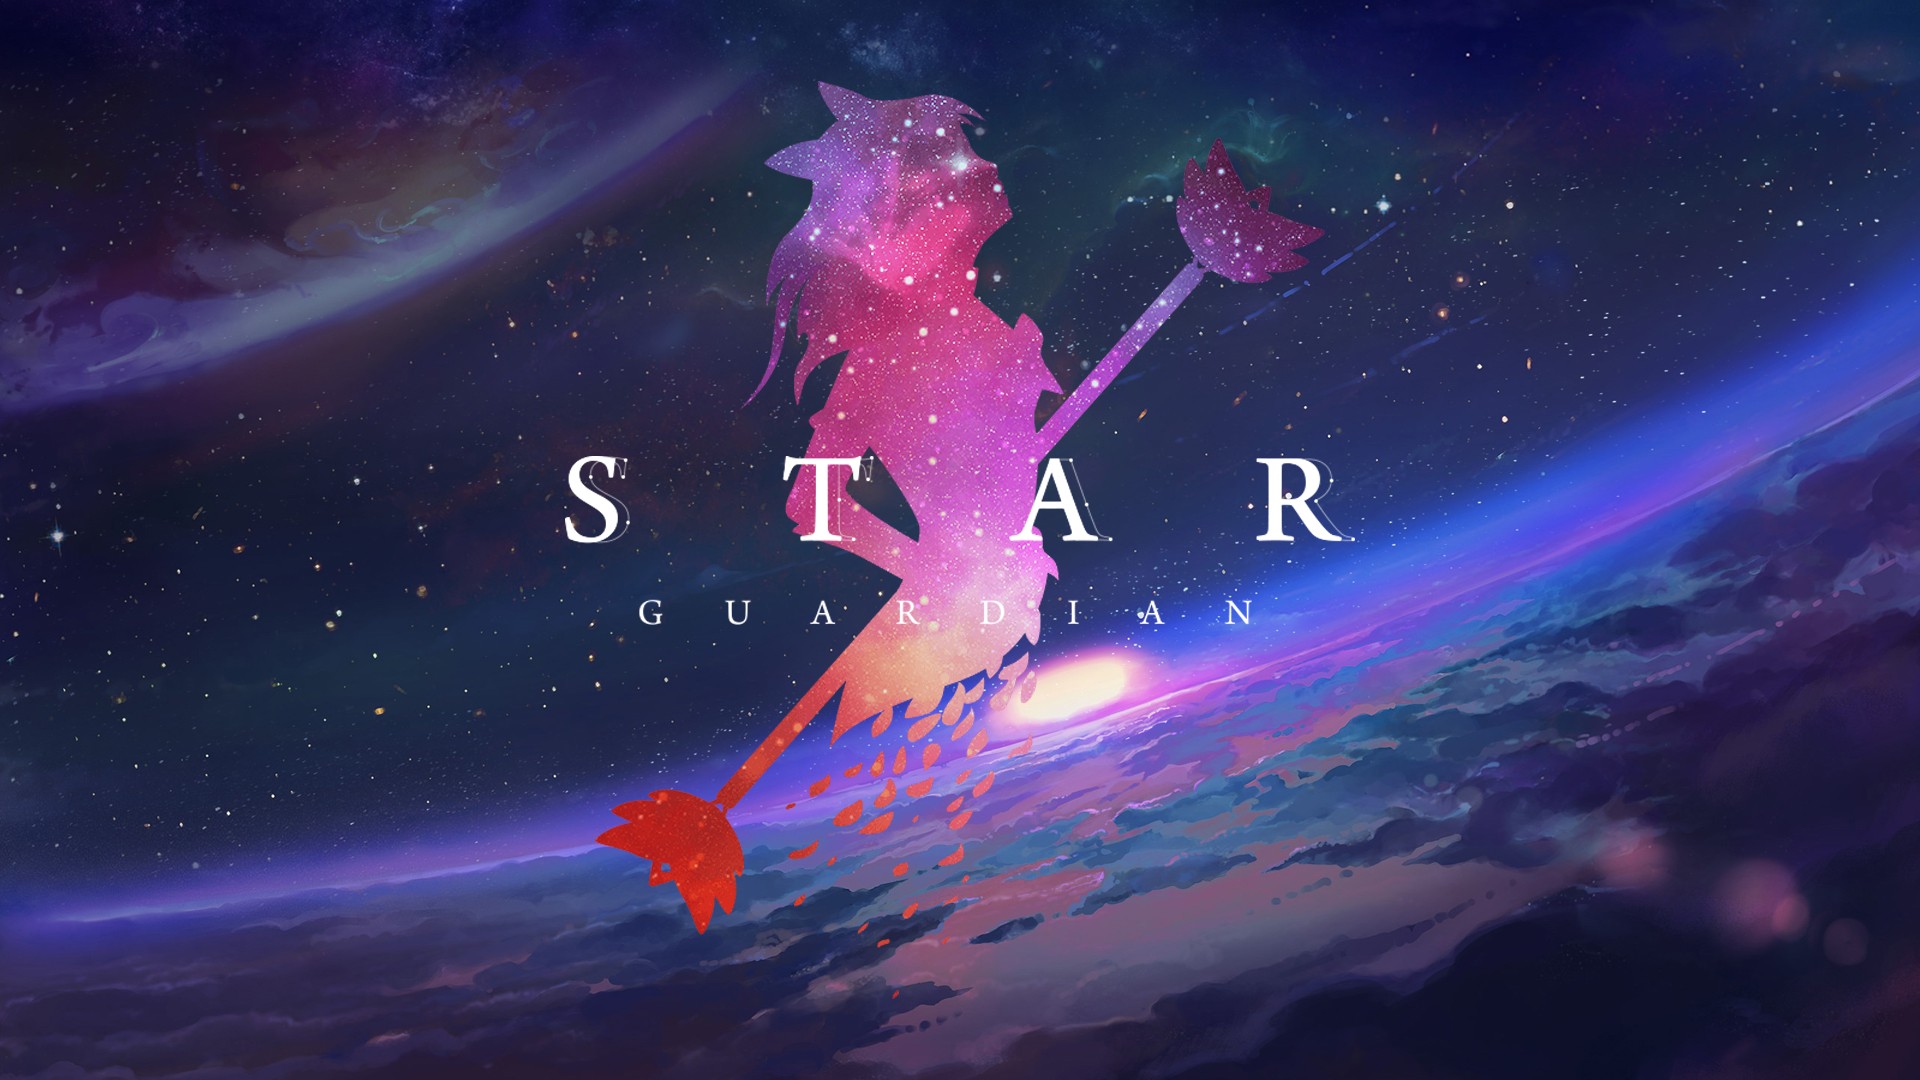 fond d'écran star guardian lux,illustration,atmosphère,ciel,espace,cosmos